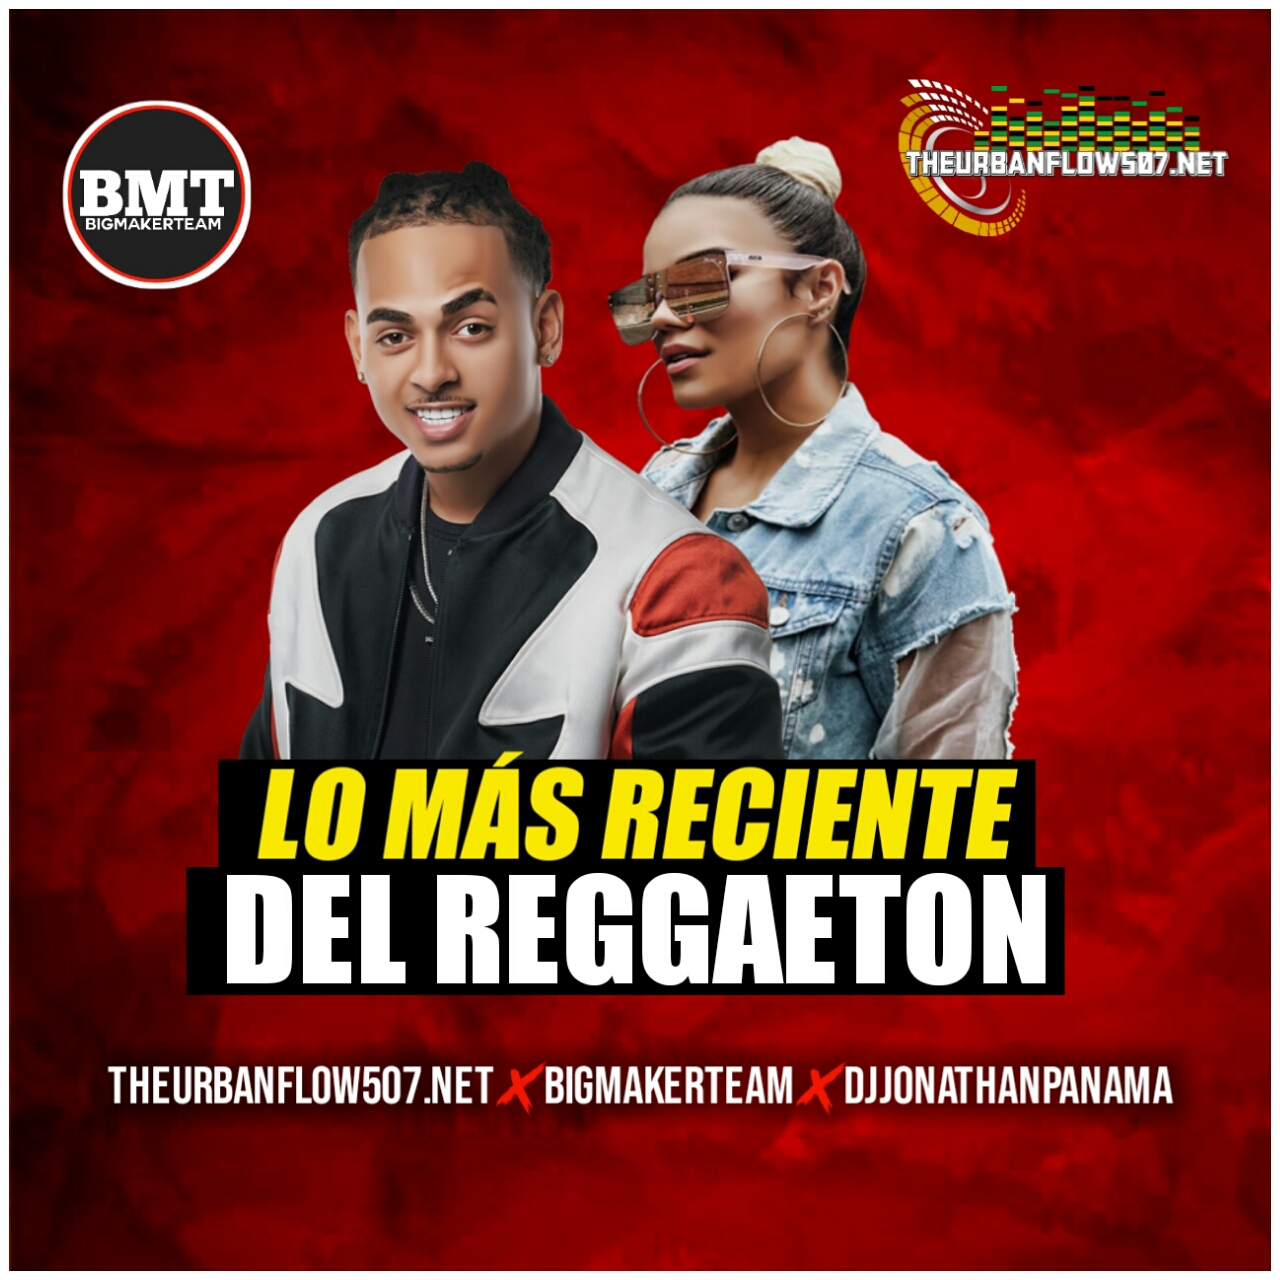 Lo + Reciente del Reggaeton Mix 2019 - @djjonathanpanama